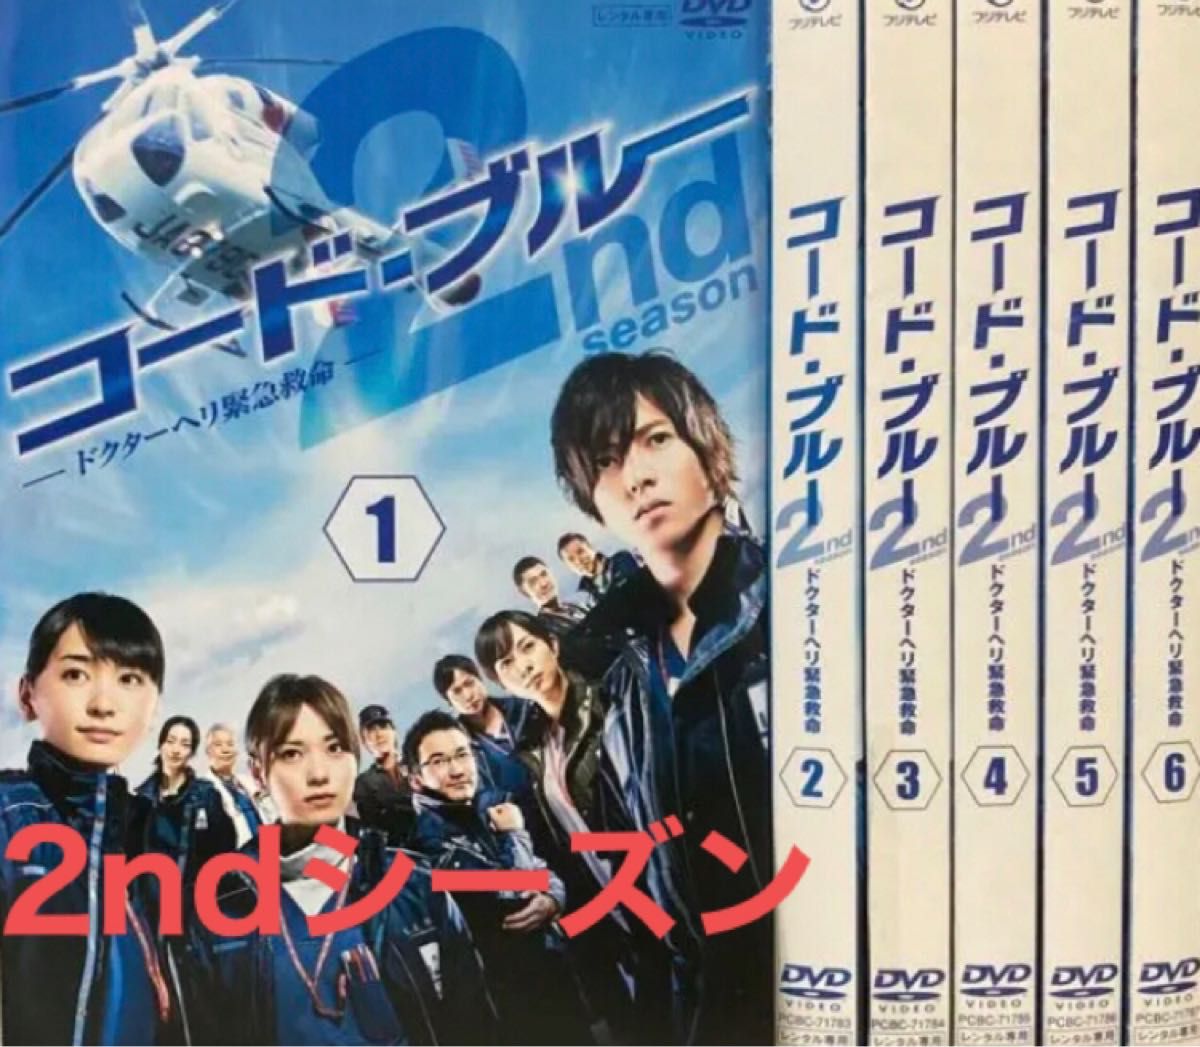 『コードブルー ドクターヘリ緊急救命』セカンドシーズン 2nd season DVD 全巻セット　全6巻　 コード・ブルー